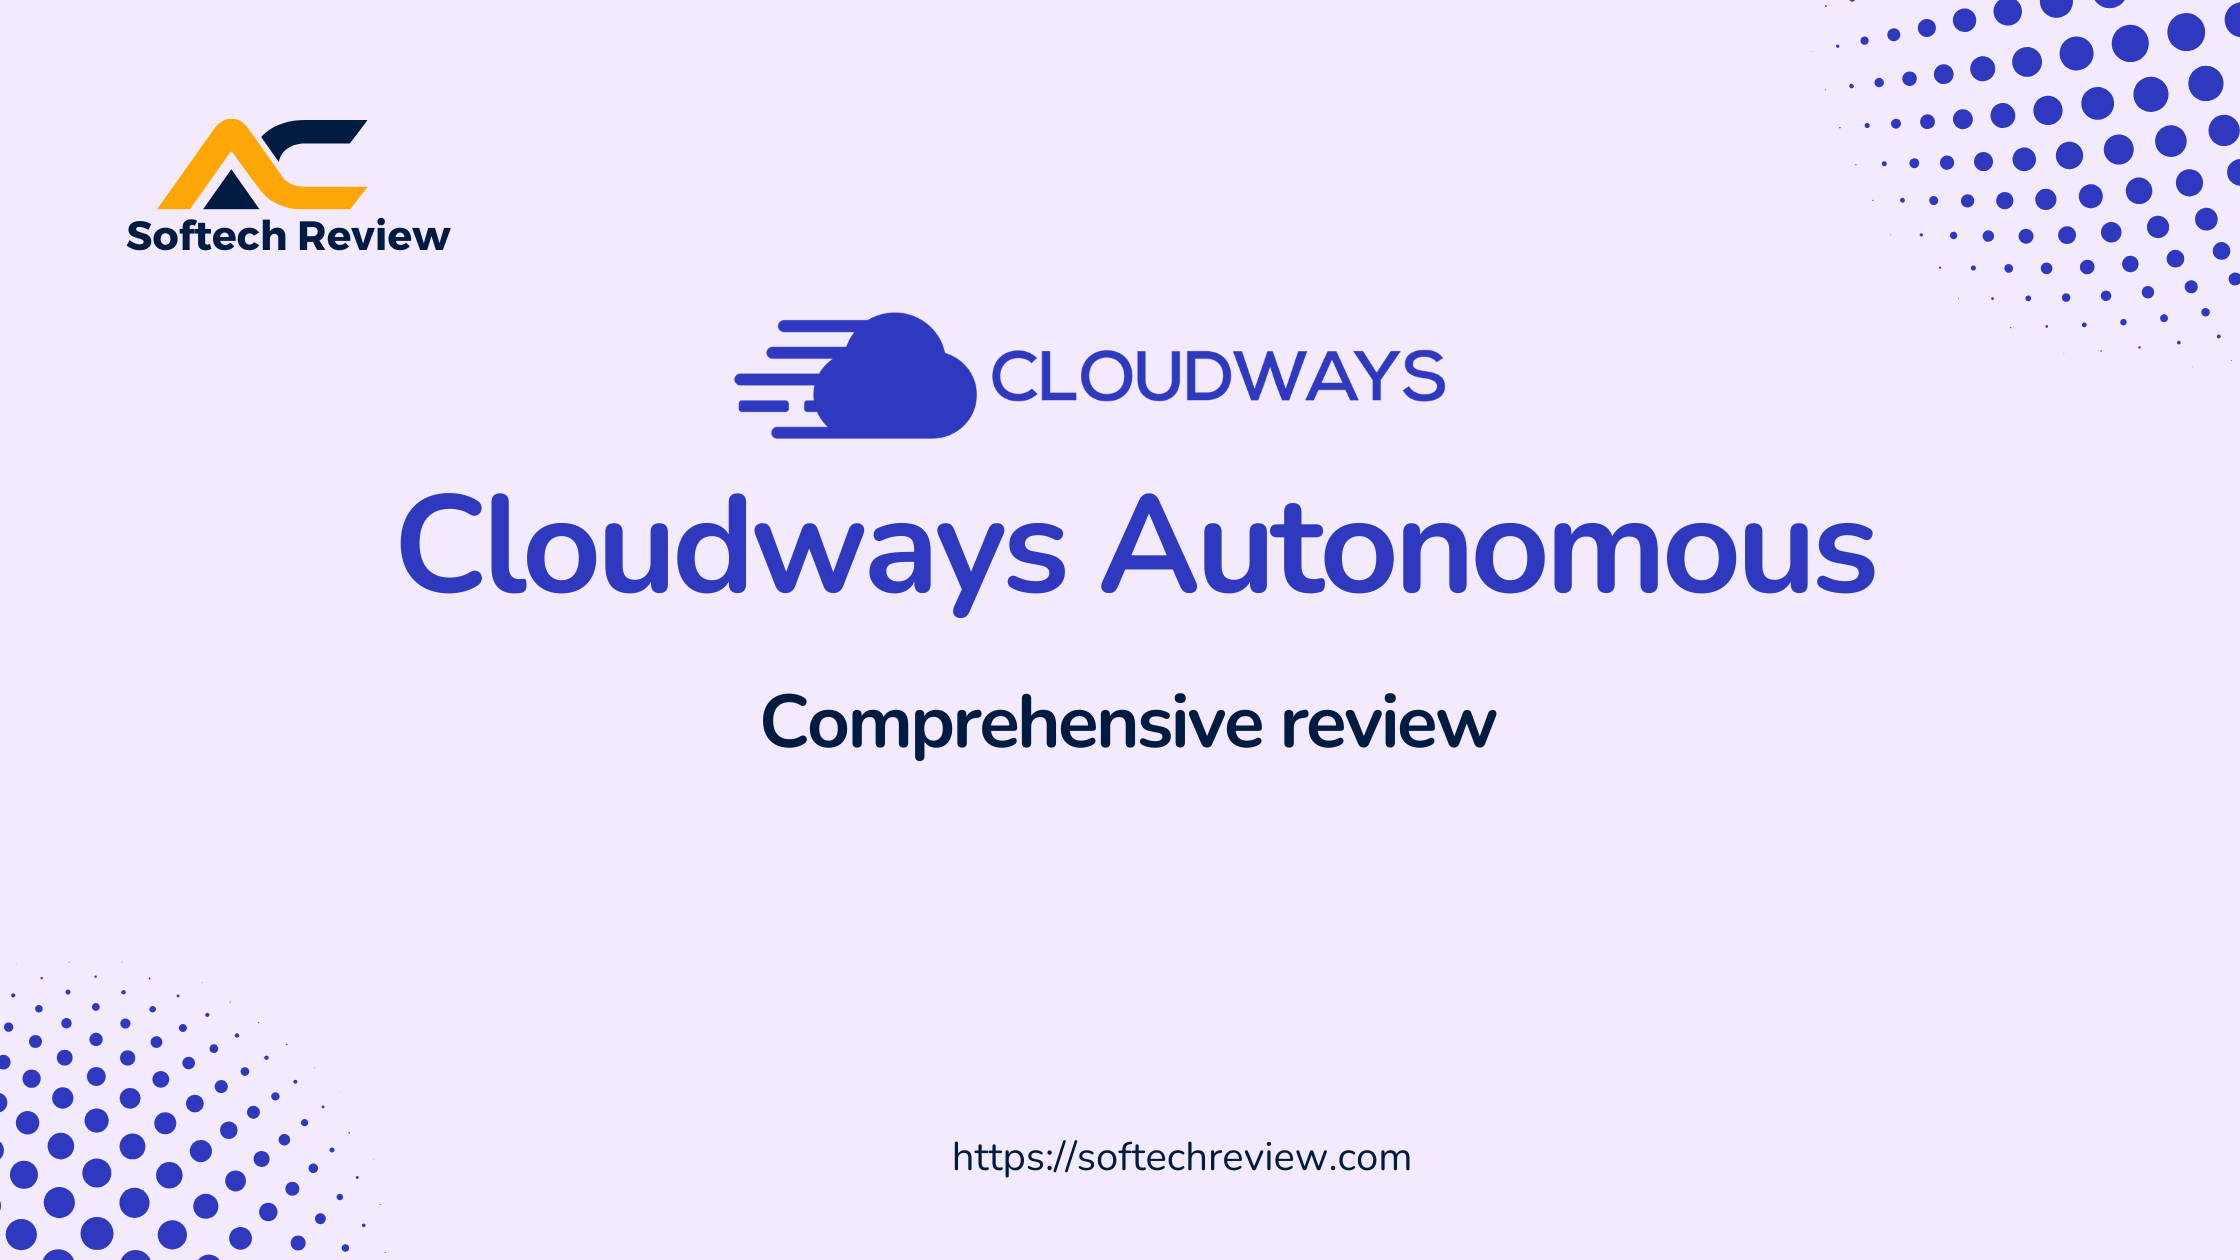 Cloudways autonomous featured